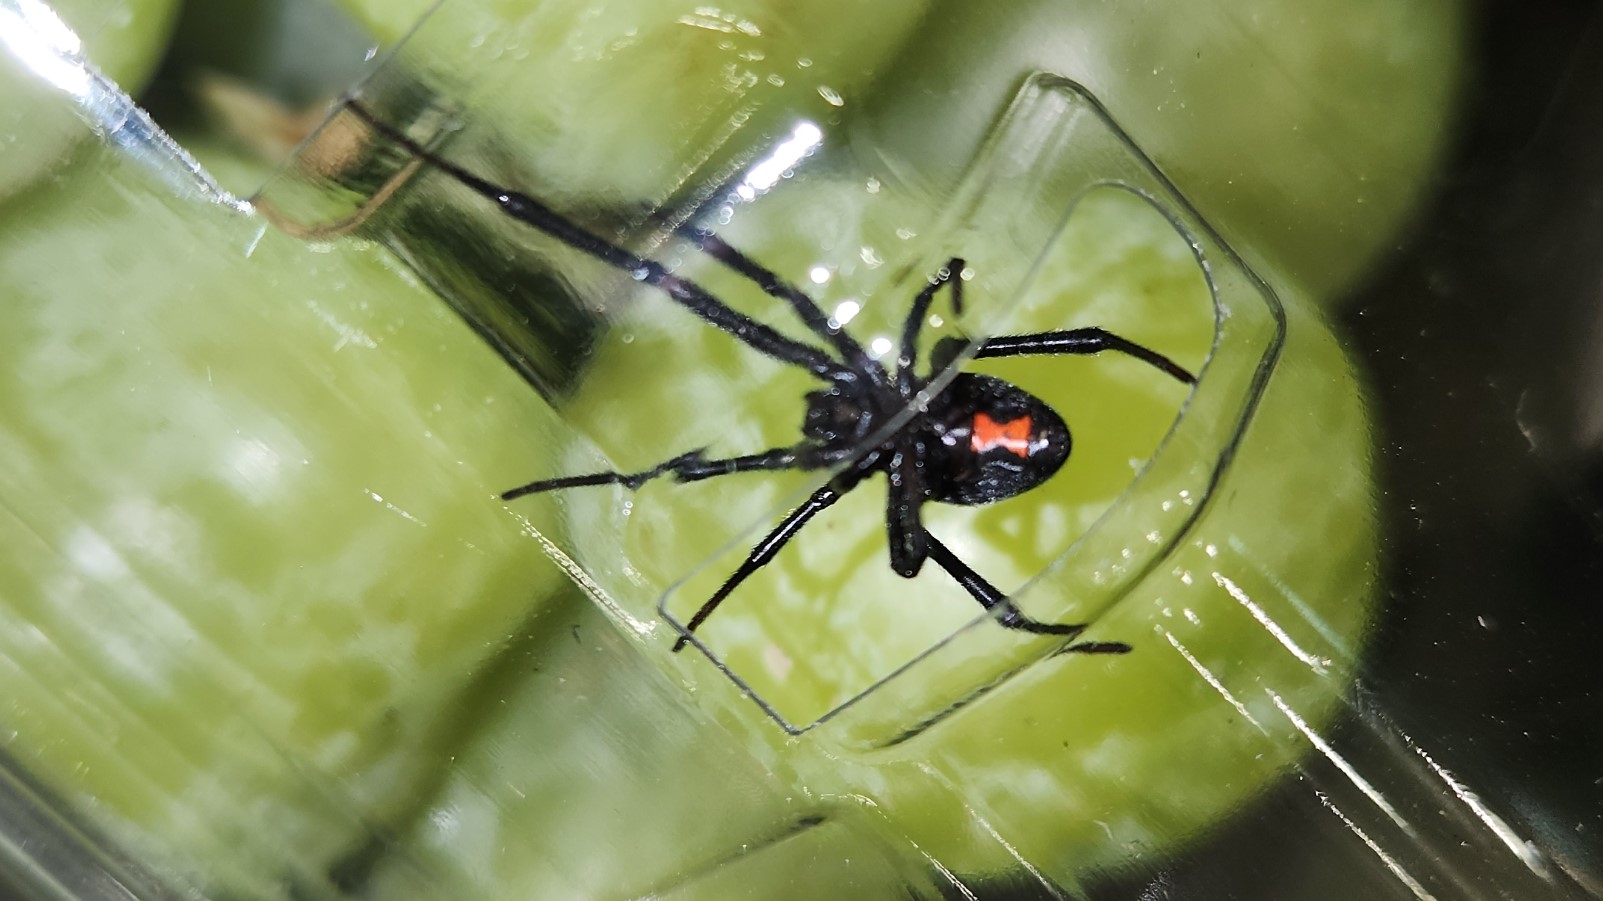 Une araignée veuve noire dans un emballage de raisins verts.